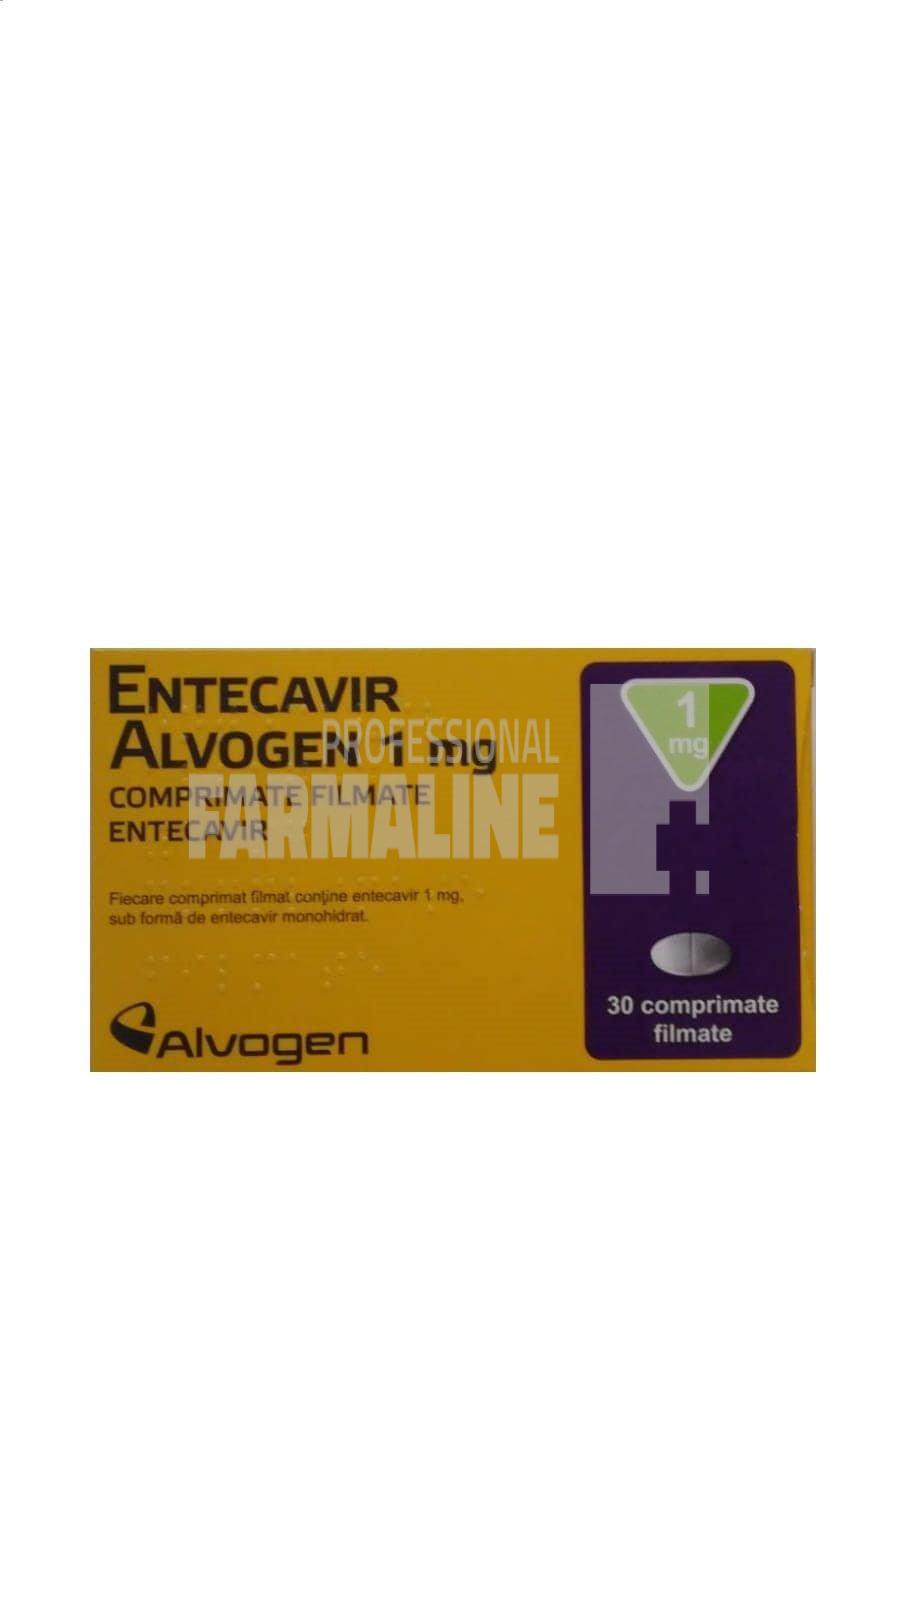 ENTECAVIR ALVOGEN 1 mg X 30